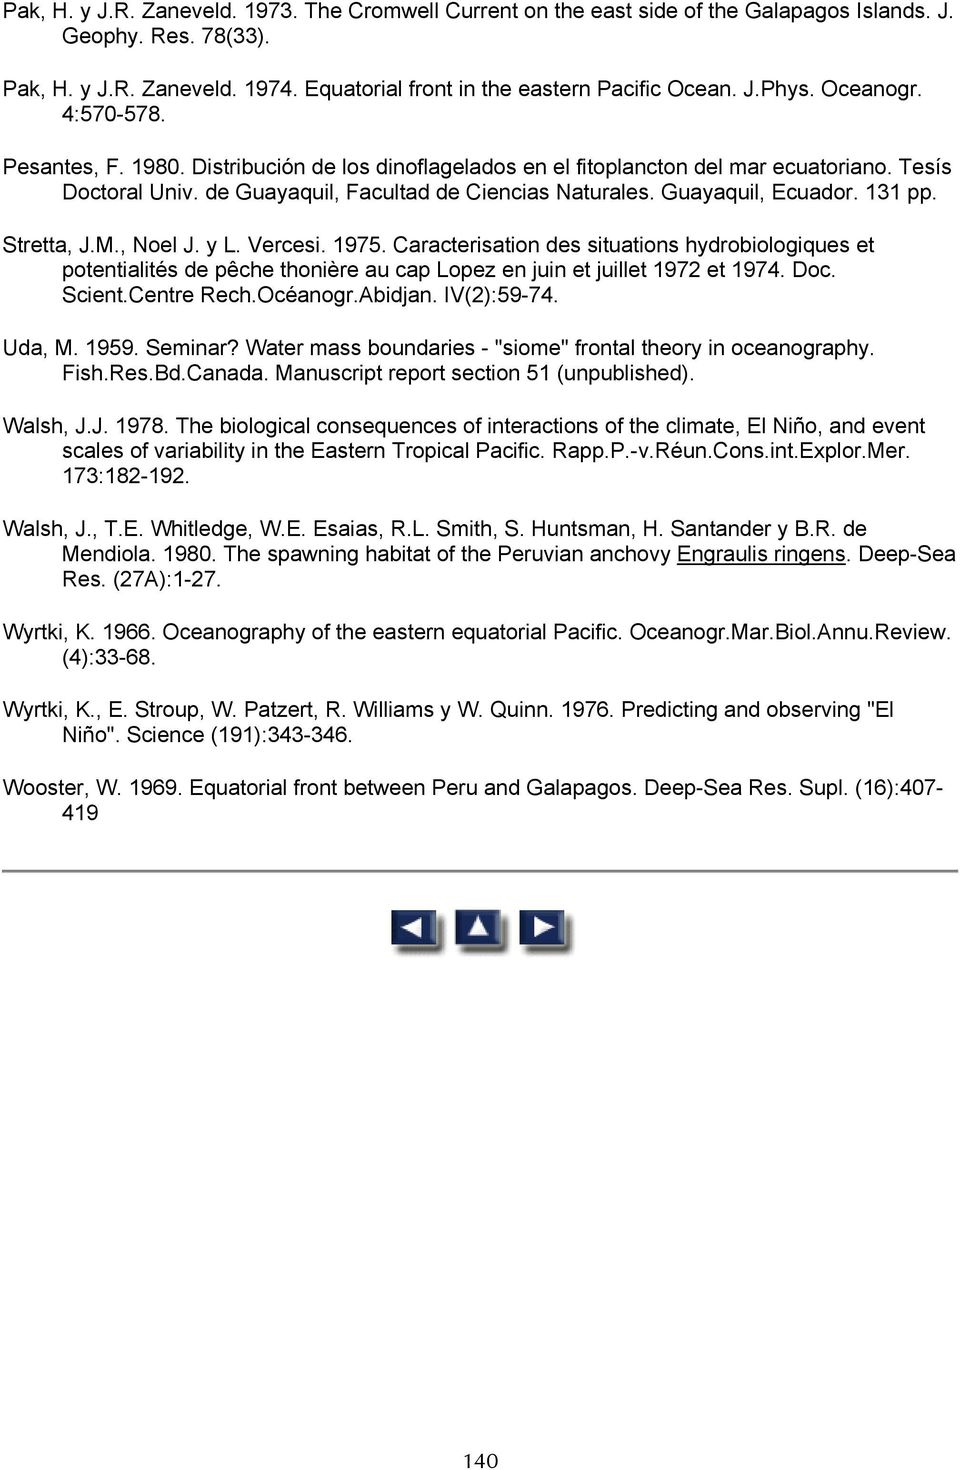 Guayaquil, Ecuador. 131 pp. Stretta, J.M., Noel J. y L. Vercesi. 1975. Caracterisation des situations hydrobiologiques et potentialités de pêche thonière au cap Lopez en juin et juillet 1972 et 1974.